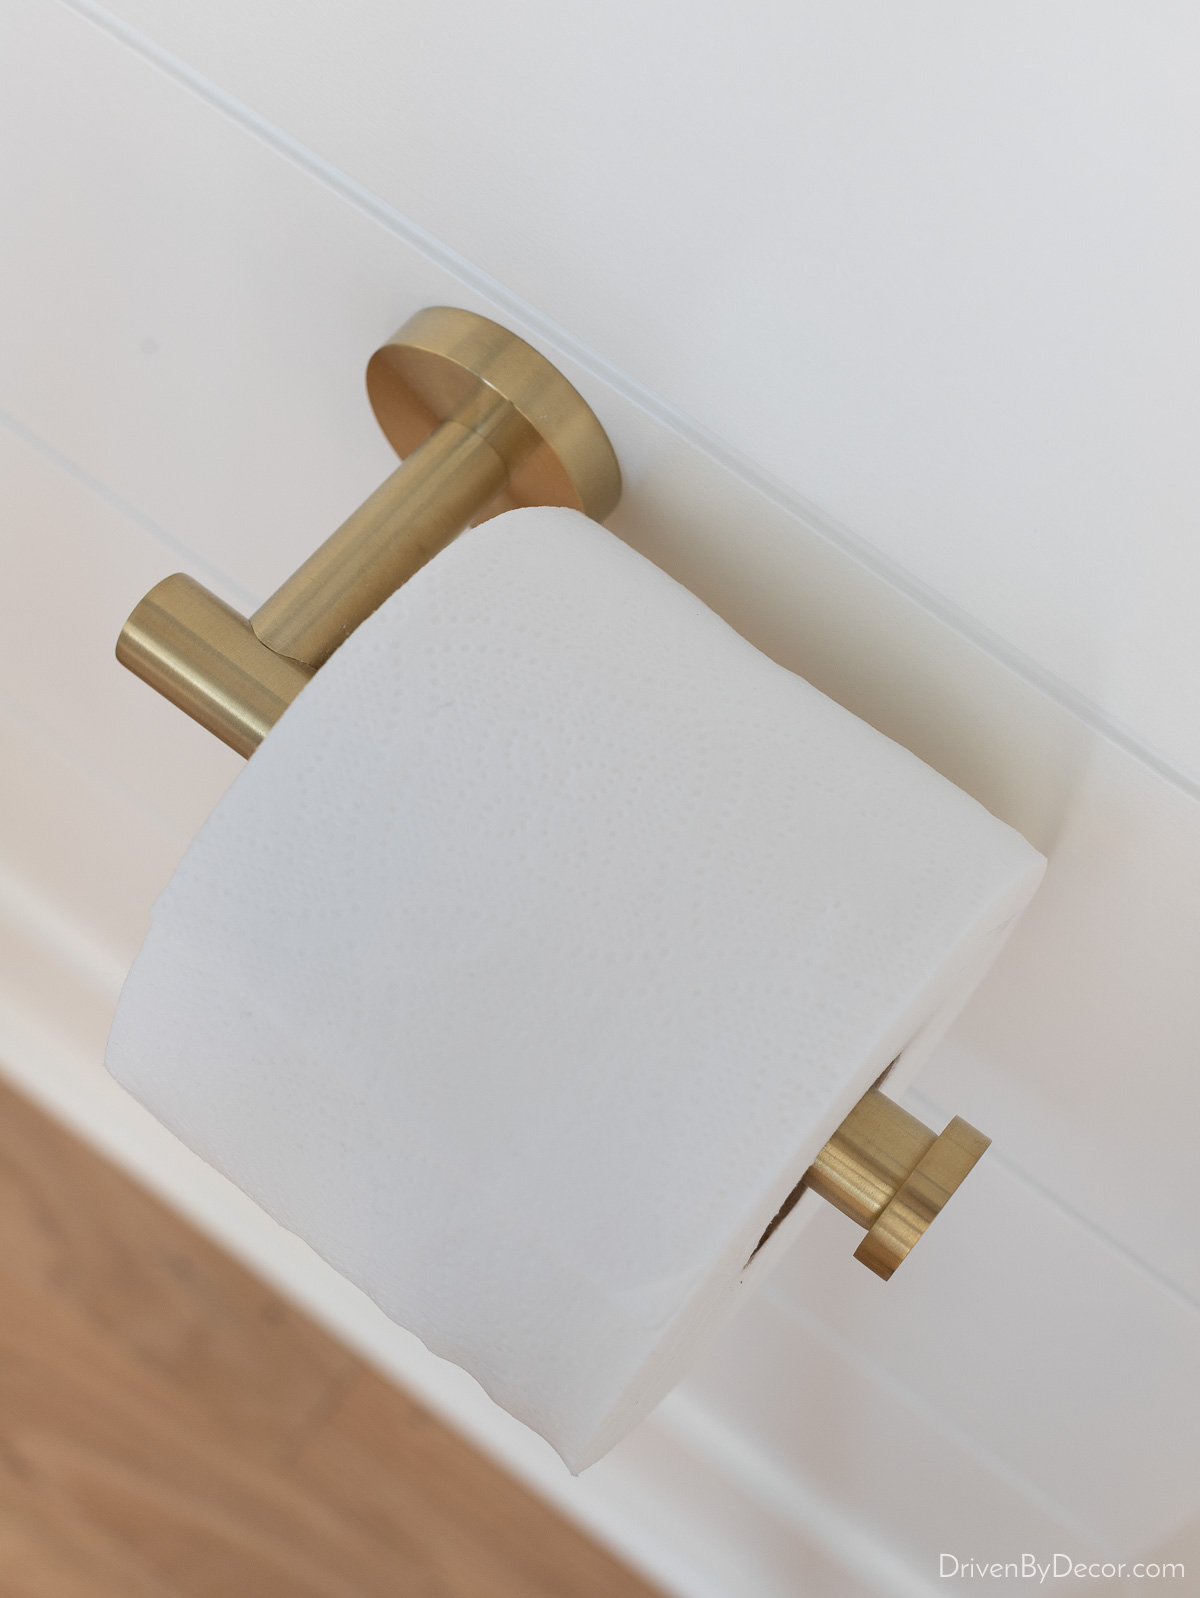 Brass toilet paper holder